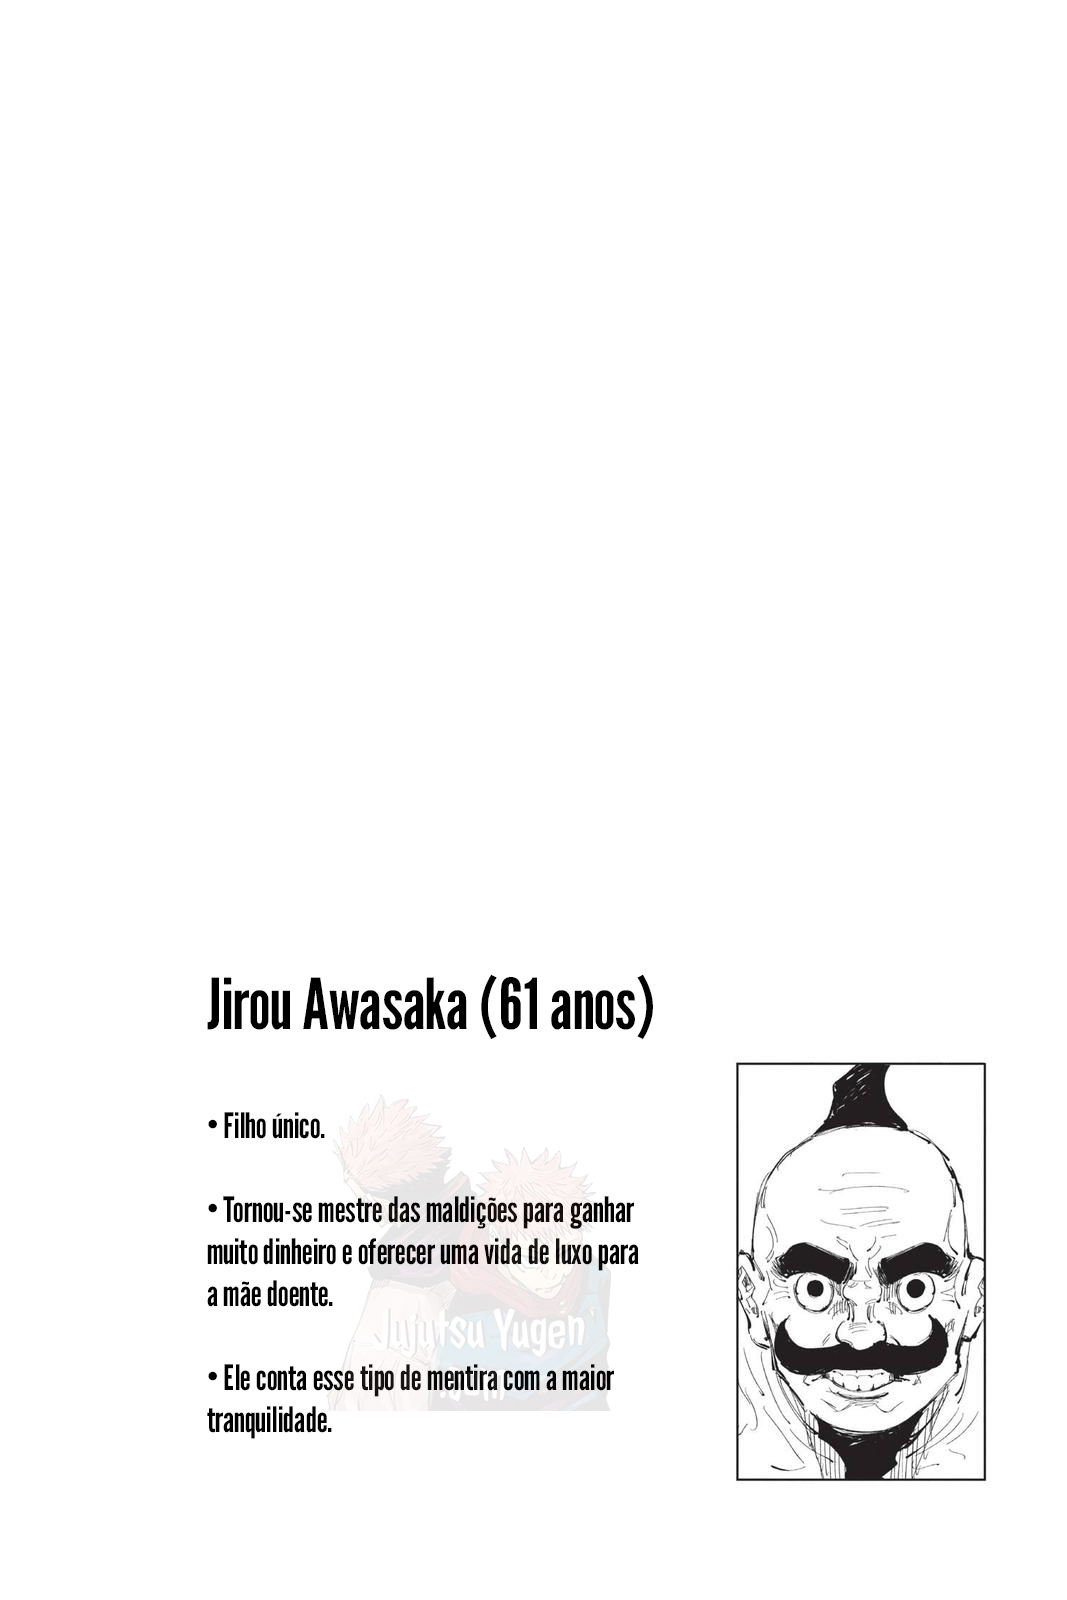 vol11-ficha-jirou-awasaka